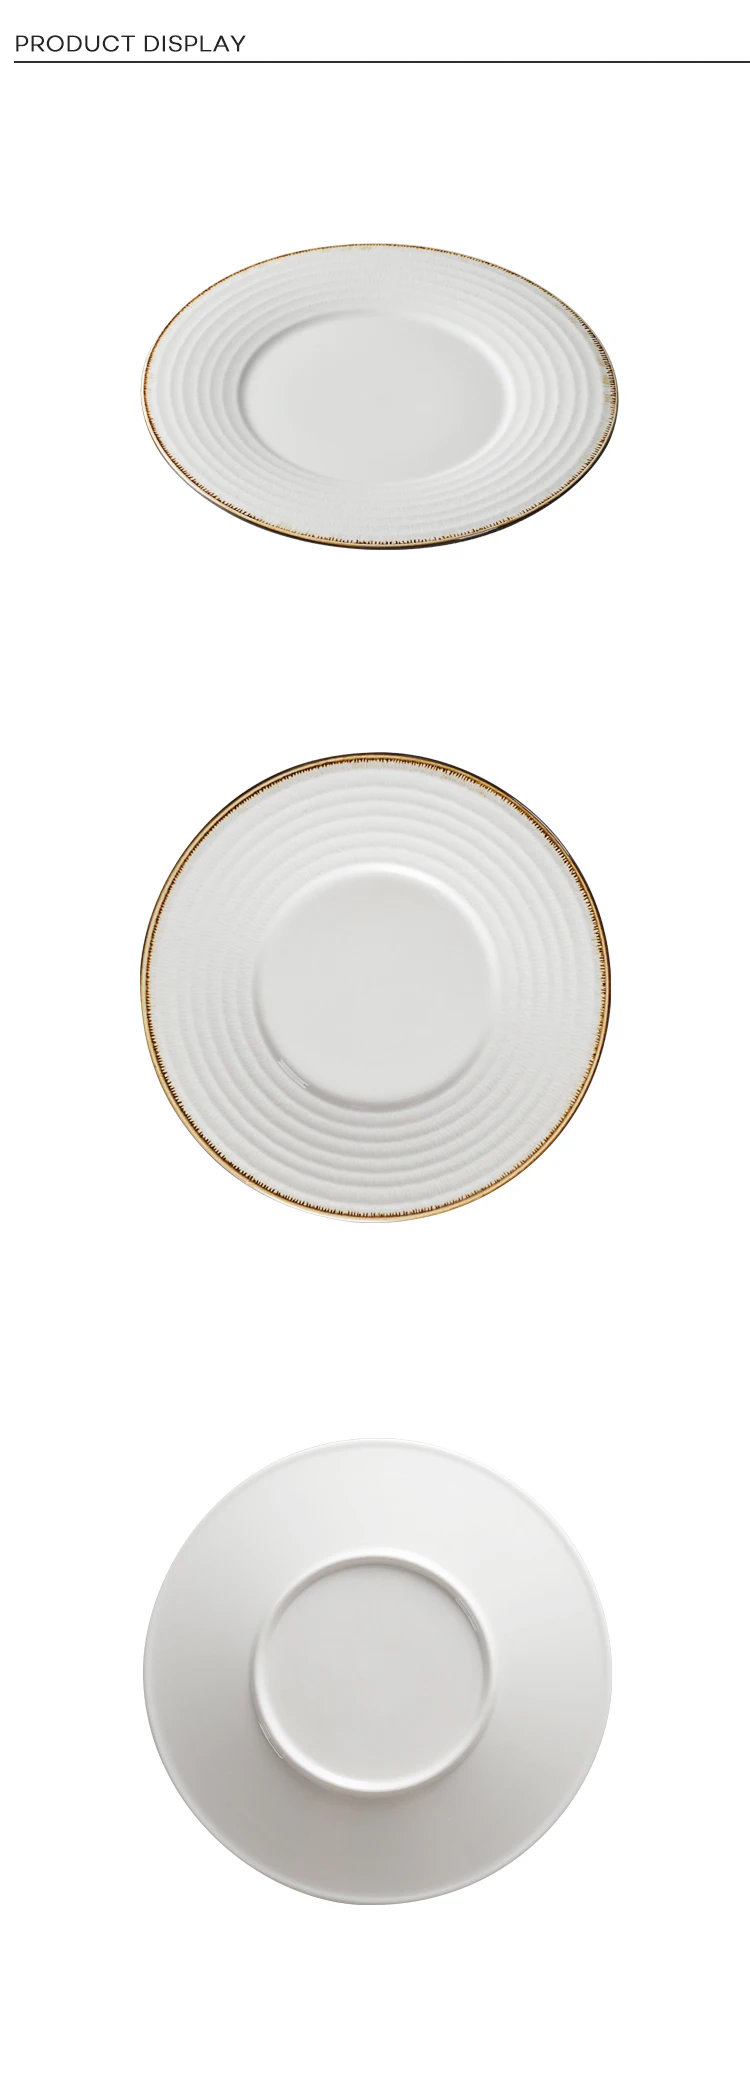 Assiette En Porcelaine, Dinner Plates With Logo In Stock For HoReCa/